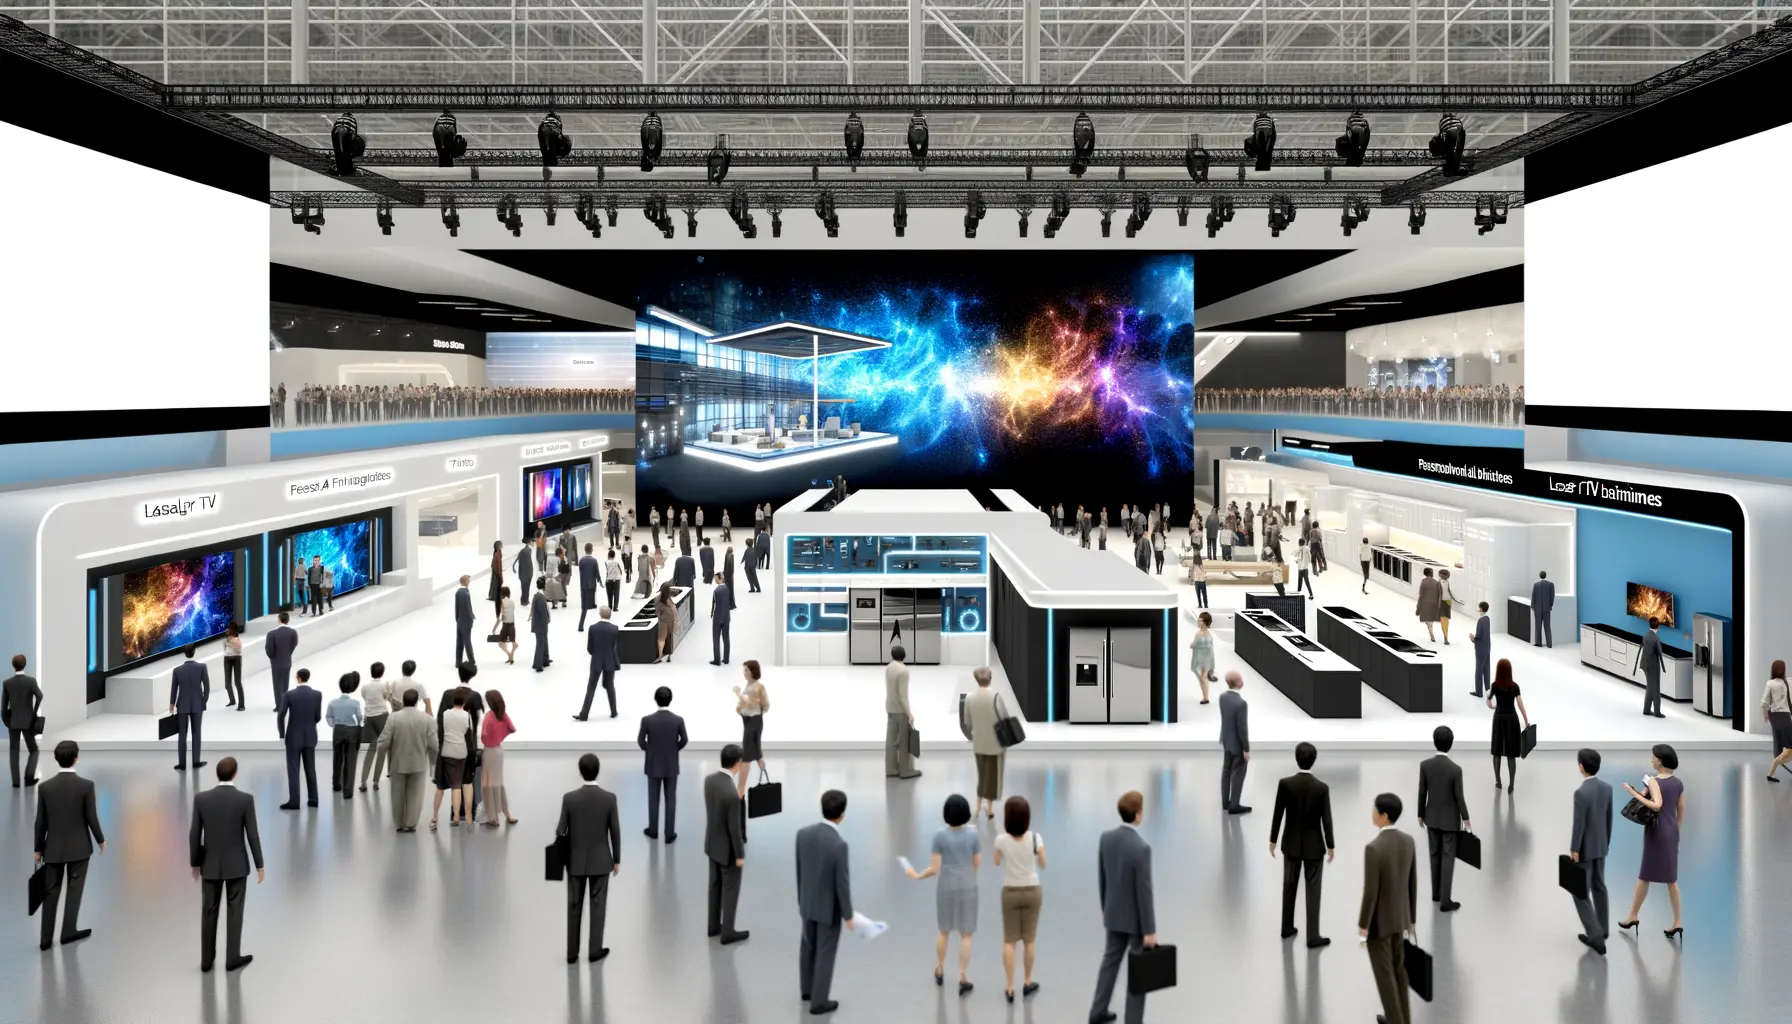 Vision einer zukünftigen Technologiekonferenz mit Hisense Innovationen